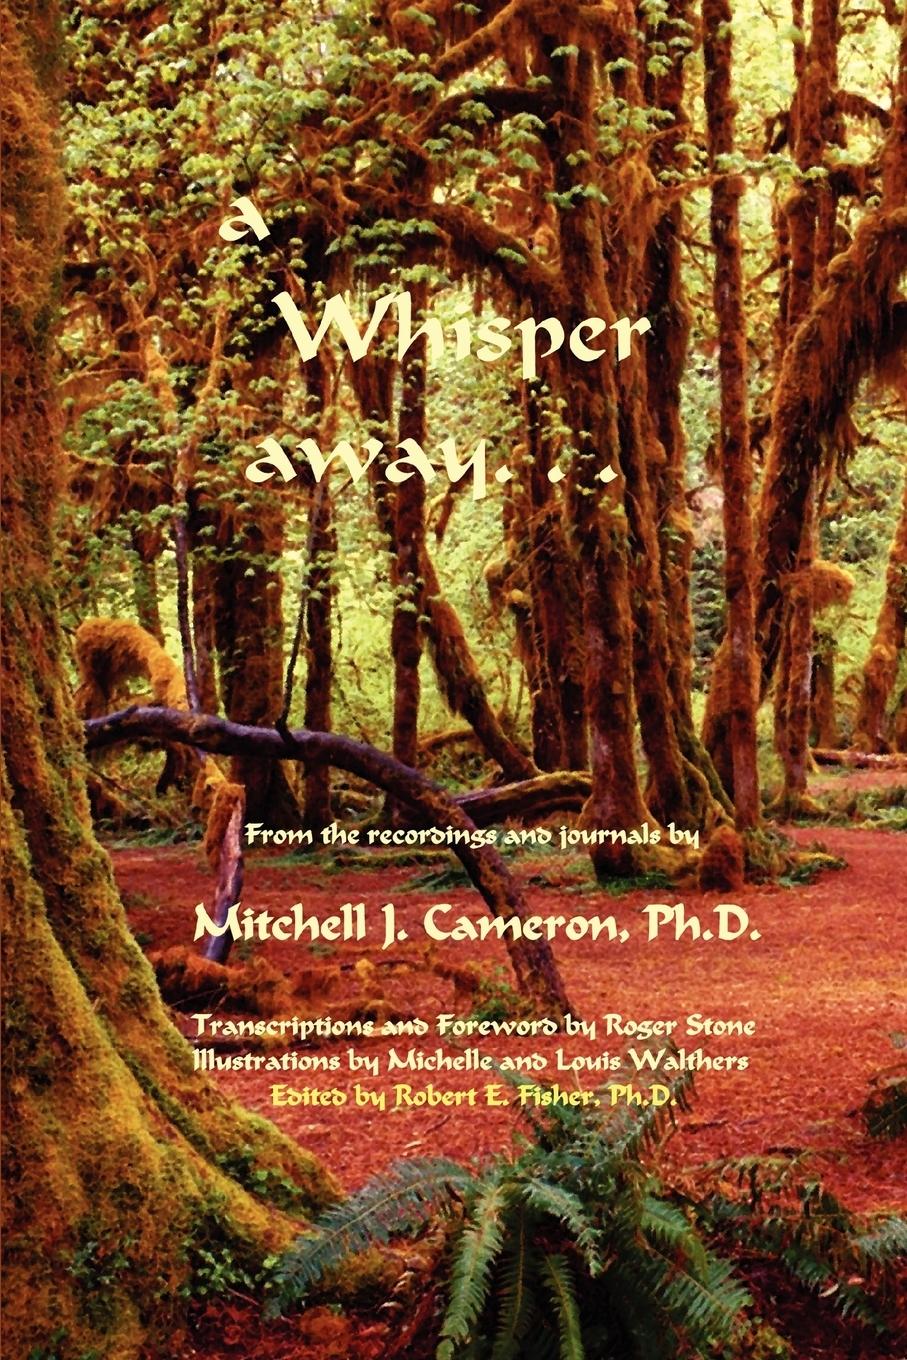 a Whisper away... - Fisher, Robert E.